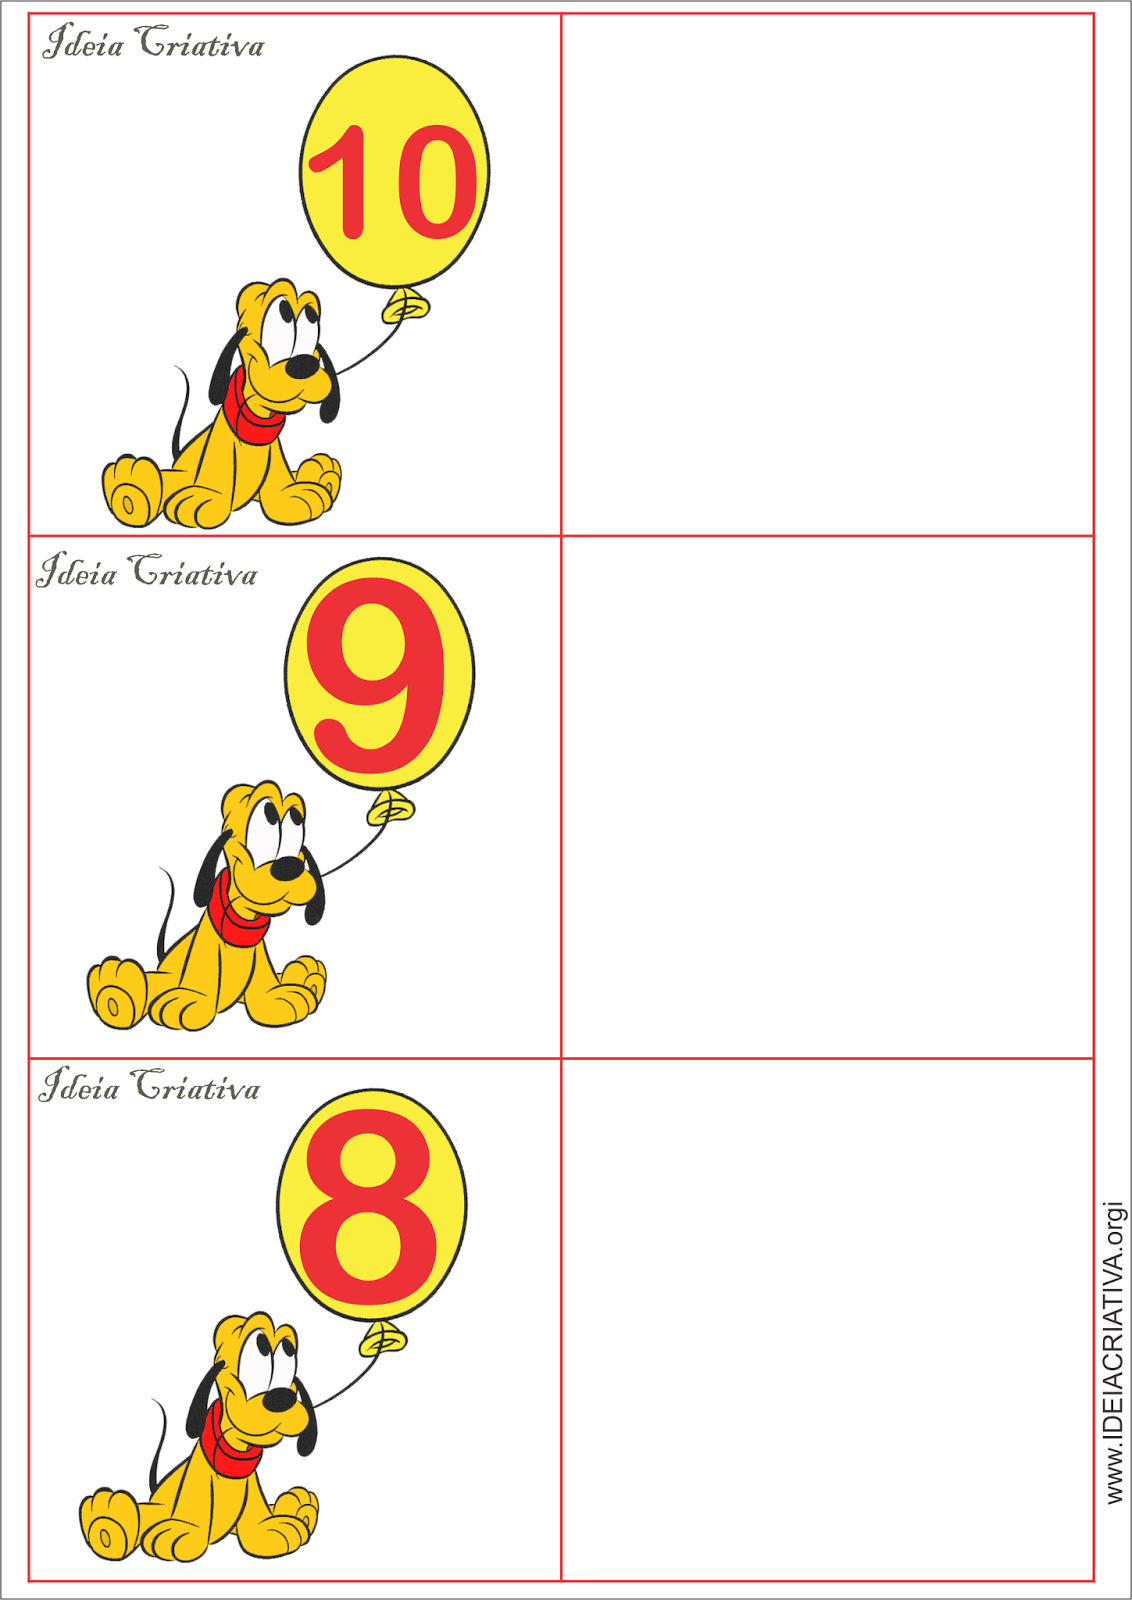 Flash Cards Sala de Recursos Mutifuncional Quantos osso Pluto quer?